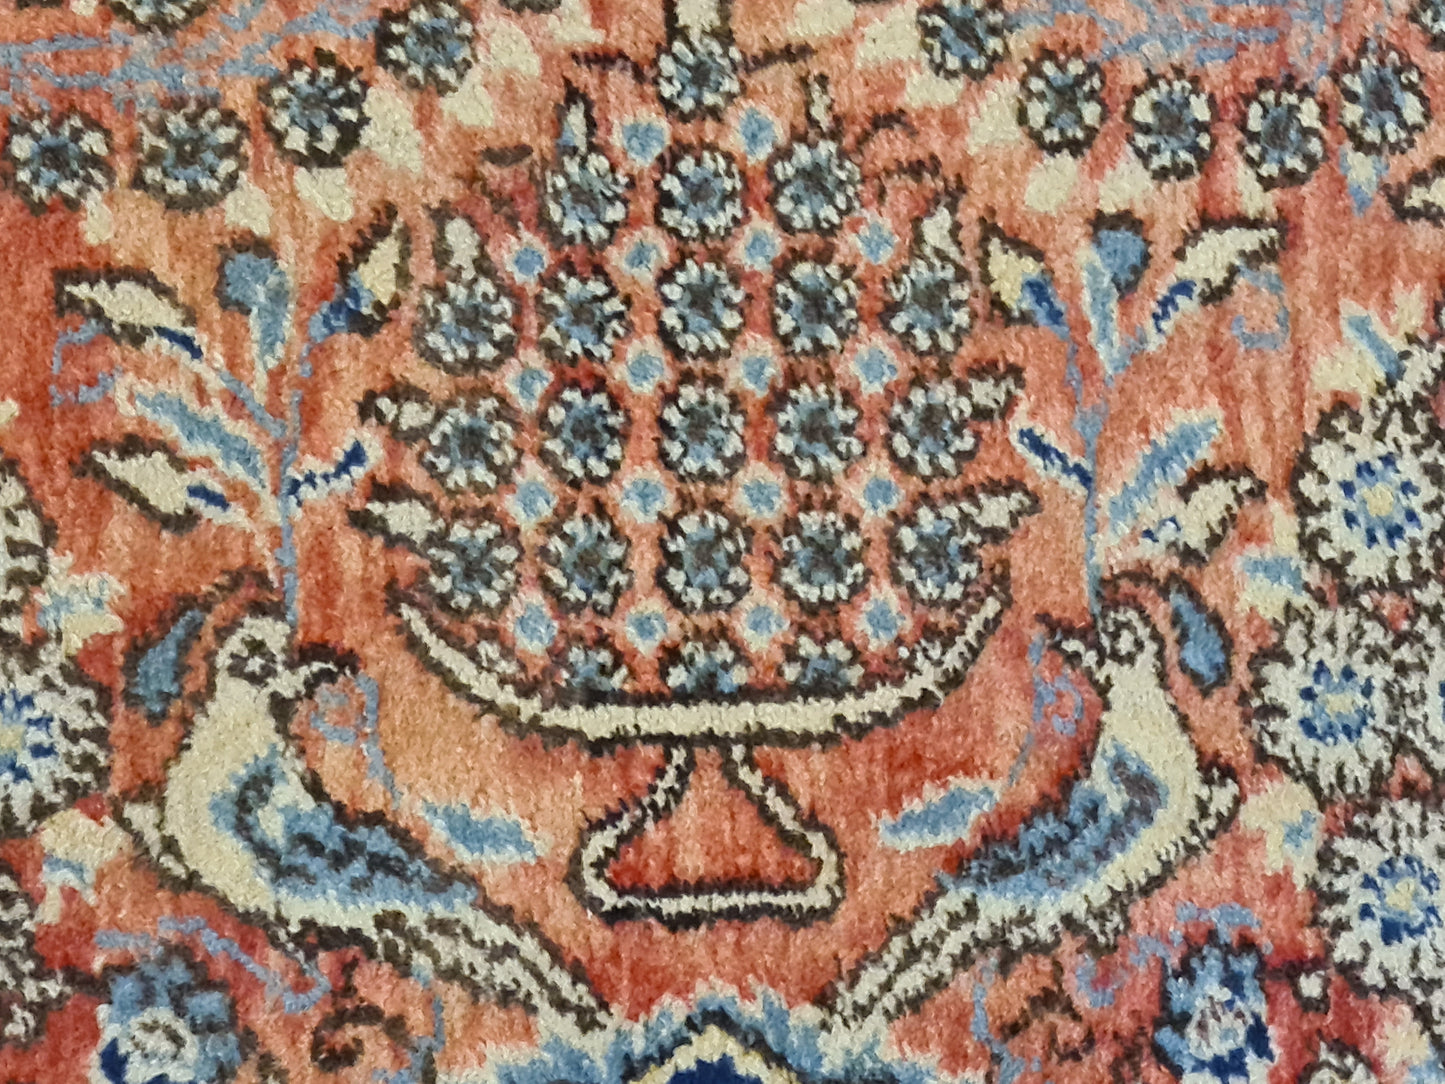 Antiker Königlicher Perser Teppich – Handgeknüpfter Ghoum-Teppich mit Vasenmotiven 270x165cm